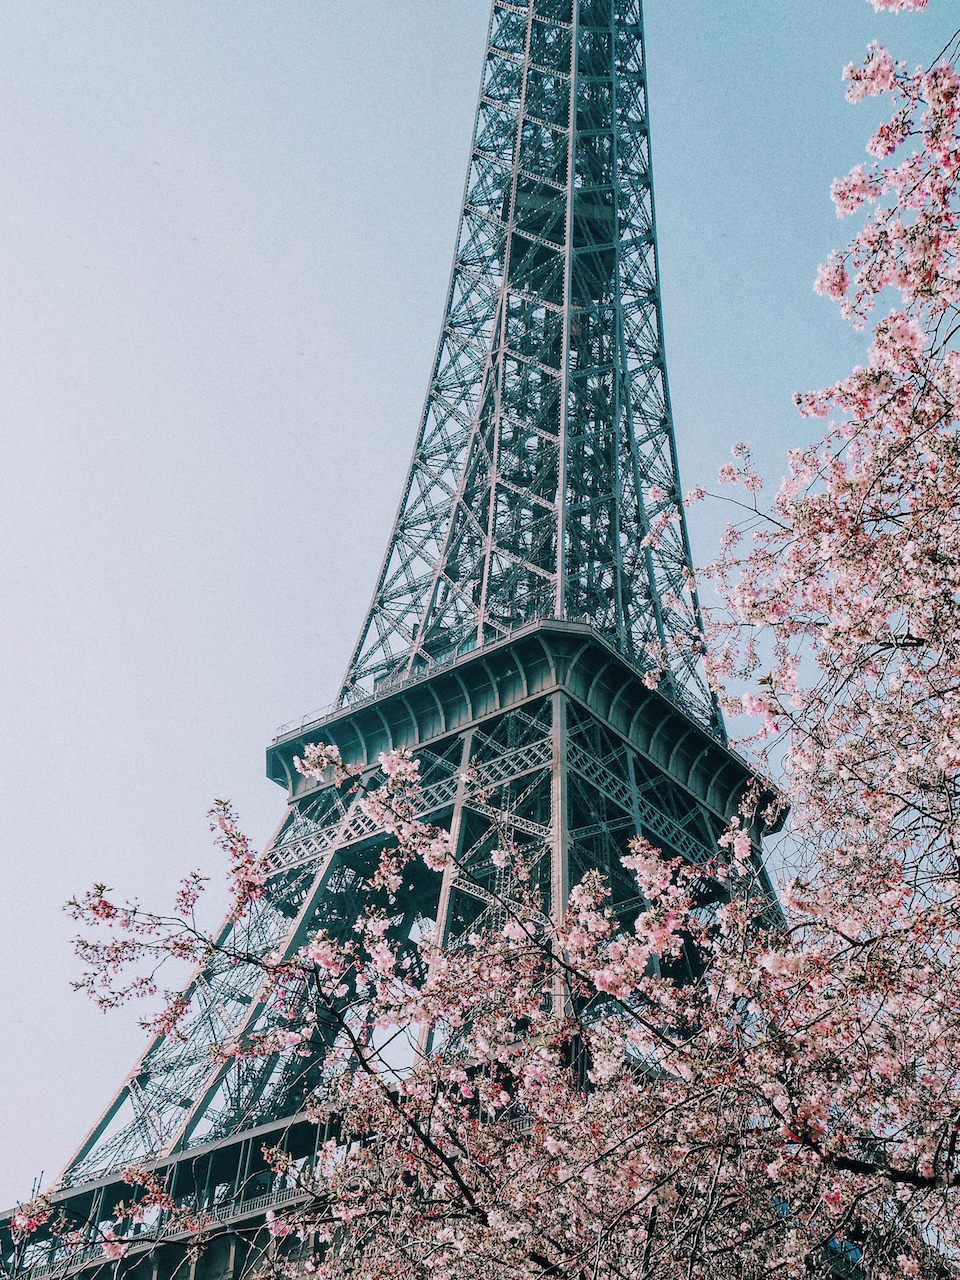 Les arbres en fleurs et la tour Eiffel au printemps - Paris - France